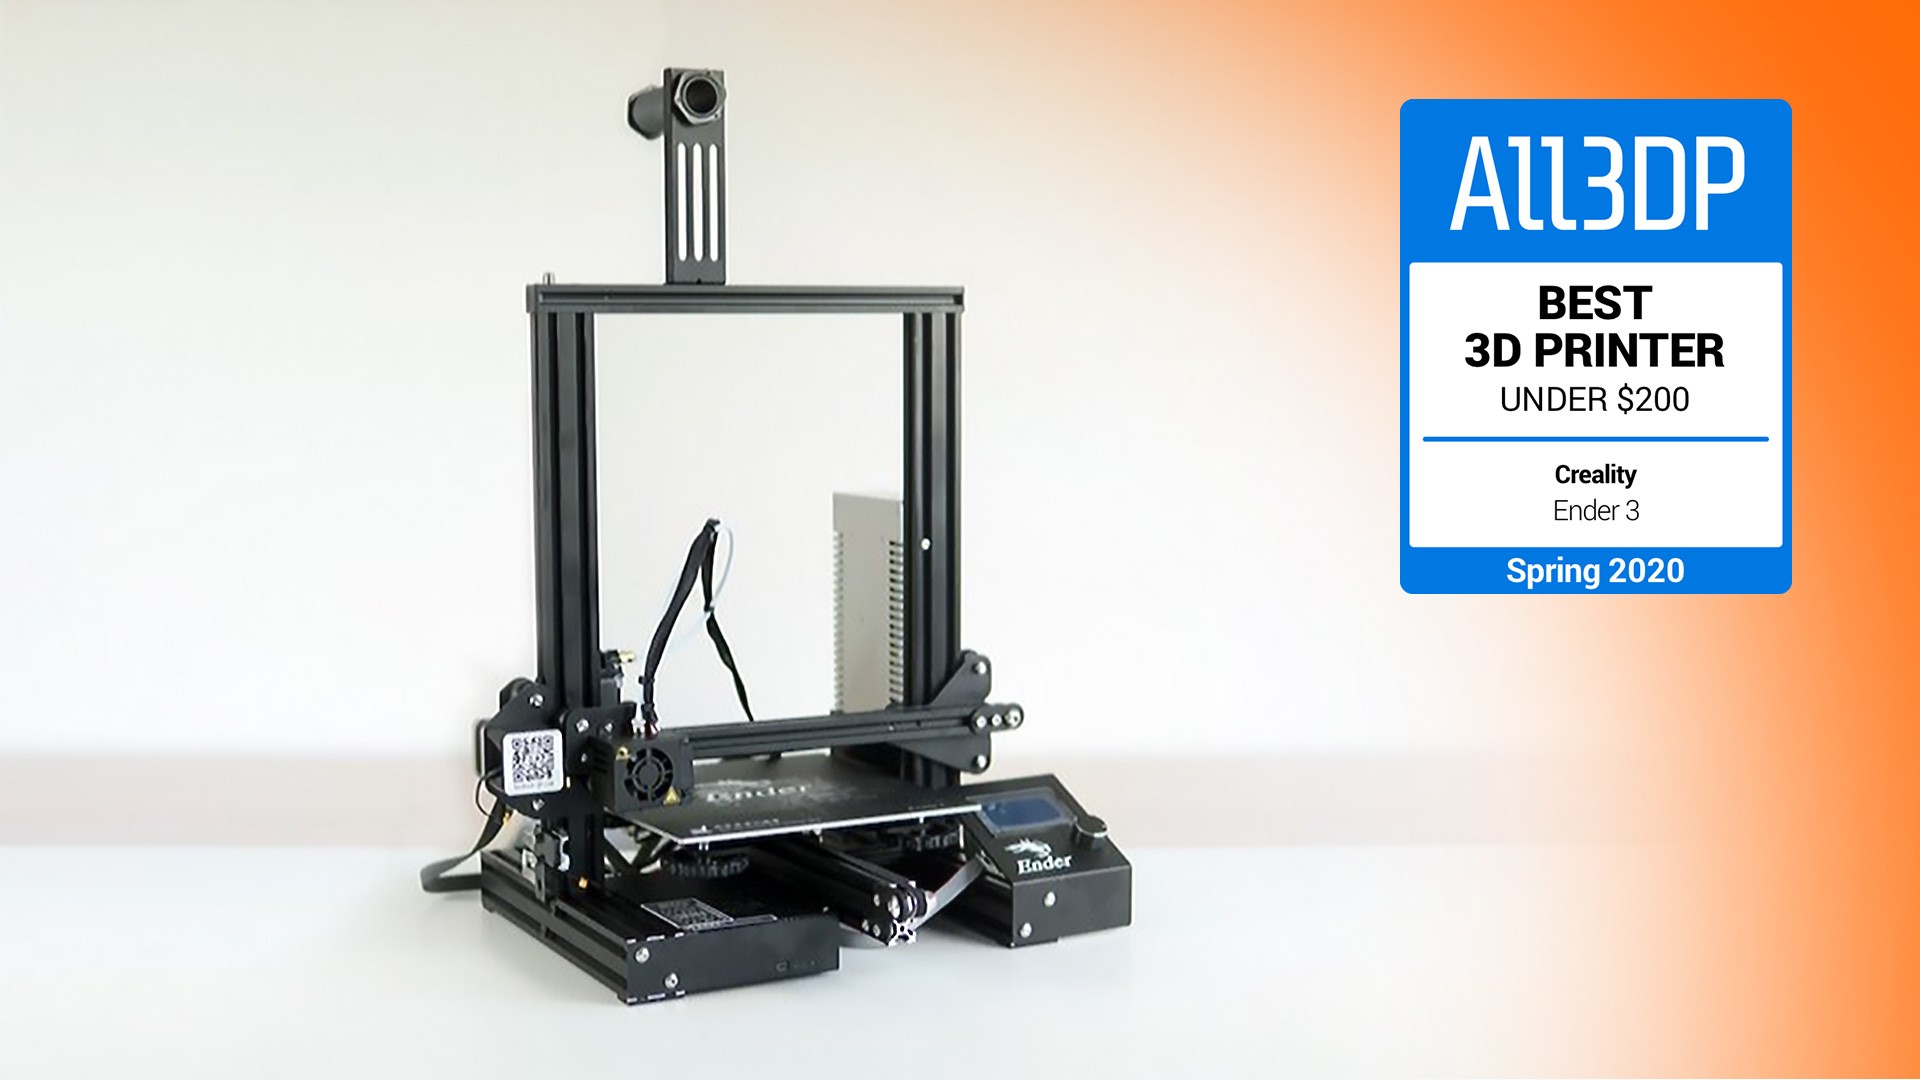 impresoras y scanners - ComgrowCreality Ender 3 Impresora 3D de aluminio con reanudación de impresión